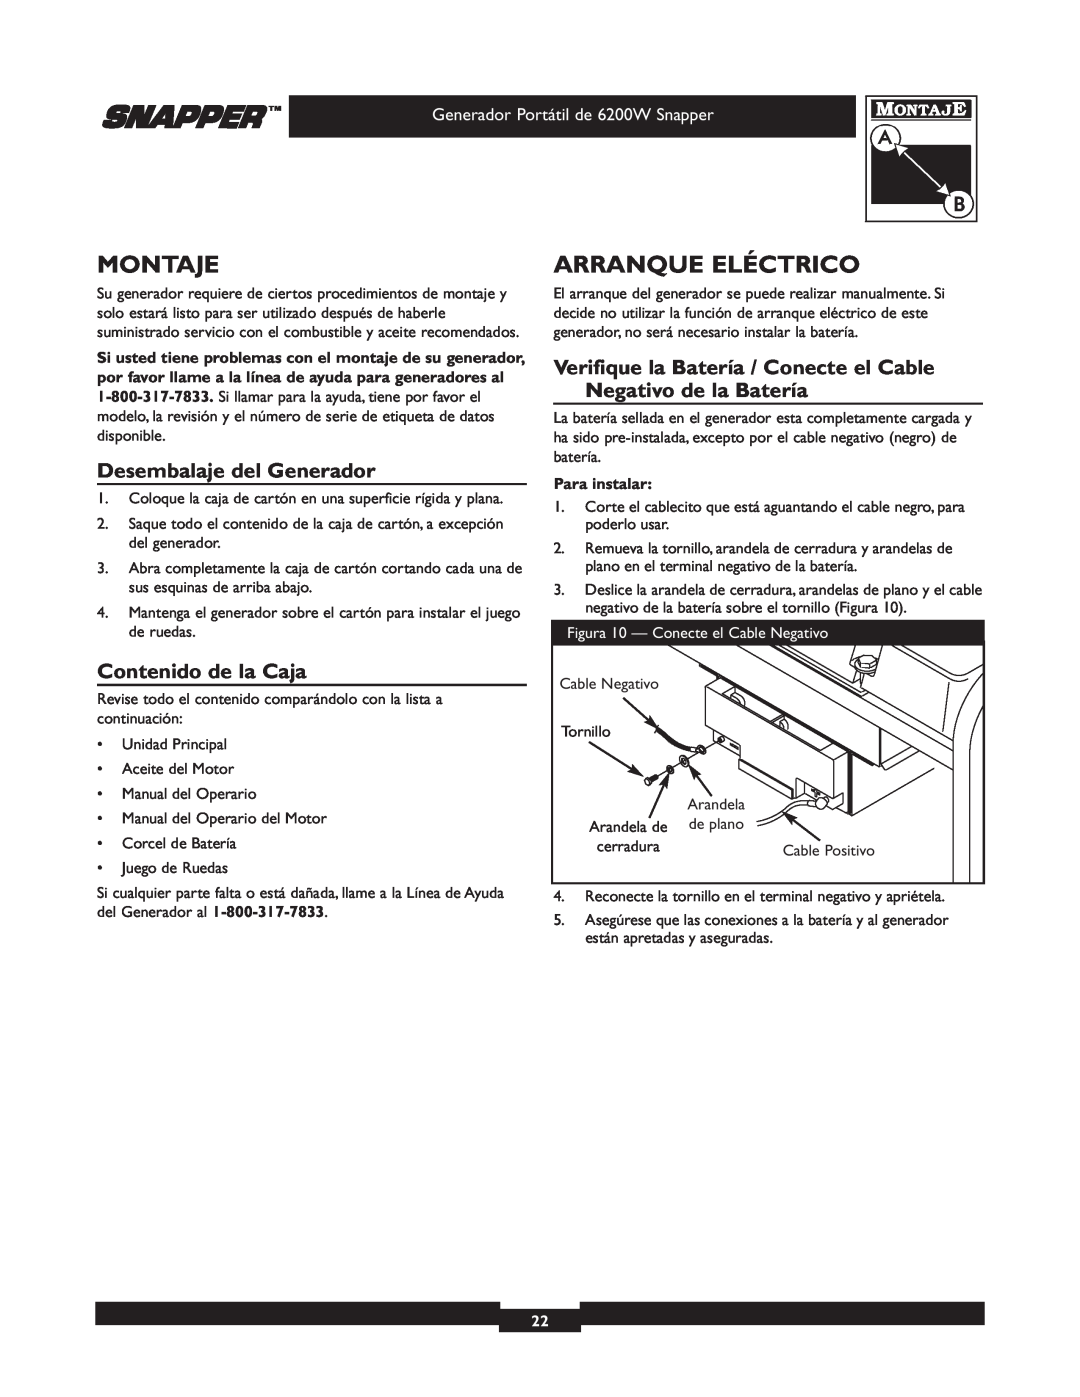 Snapper 30216 manual Montaje, Arranque Eléctrico, Desembalaje del Generador, Contenido de la Caja, Para instalar 